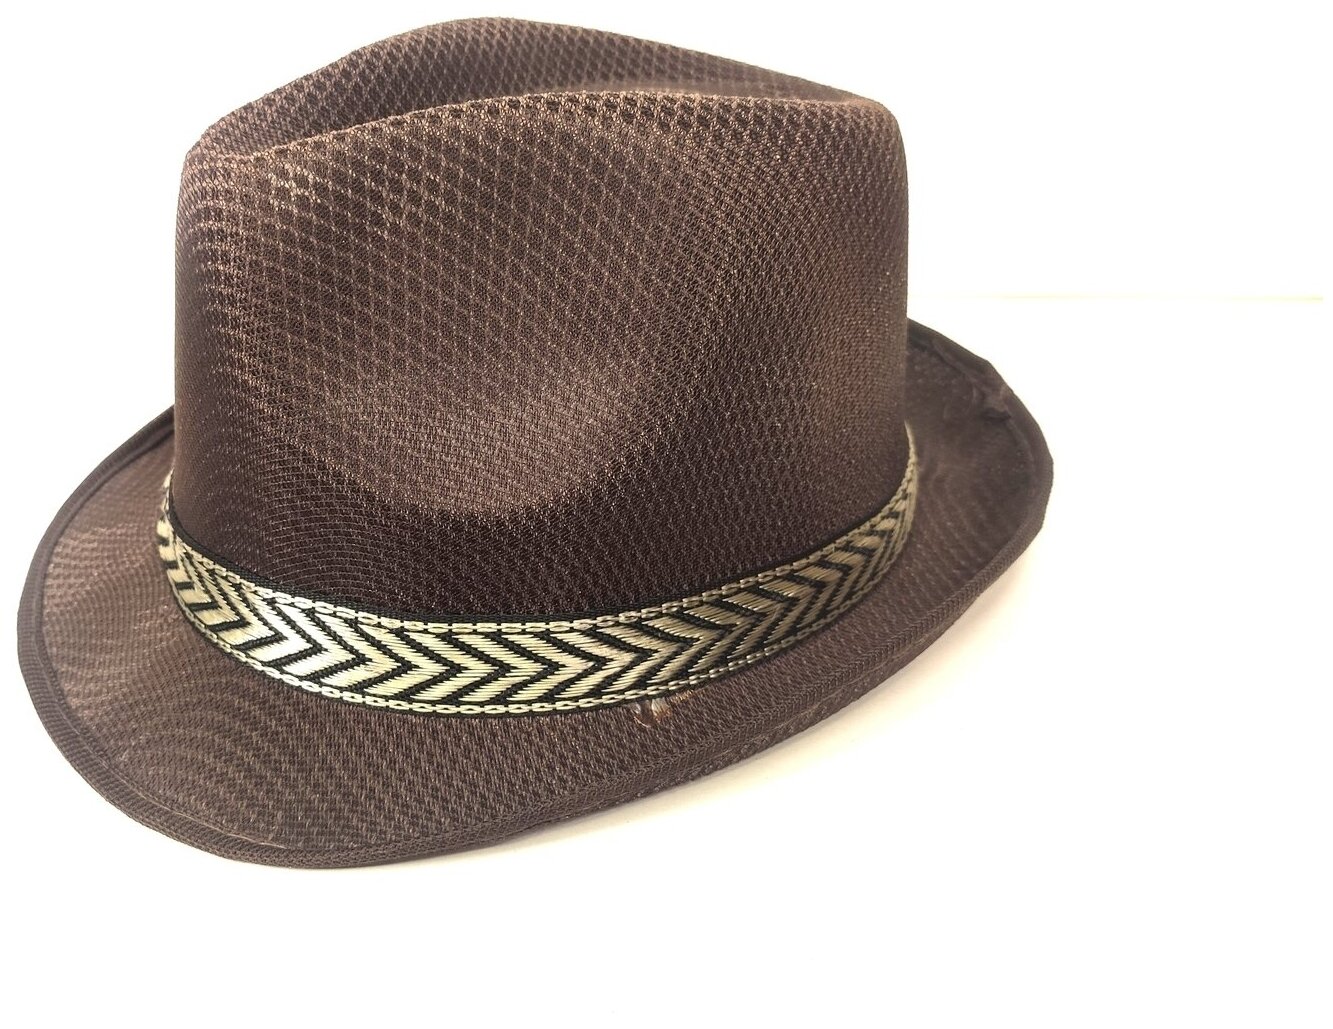 Шляпа Fedora (Федора) / Шляпа Гангстера коричневая с лентой легкая